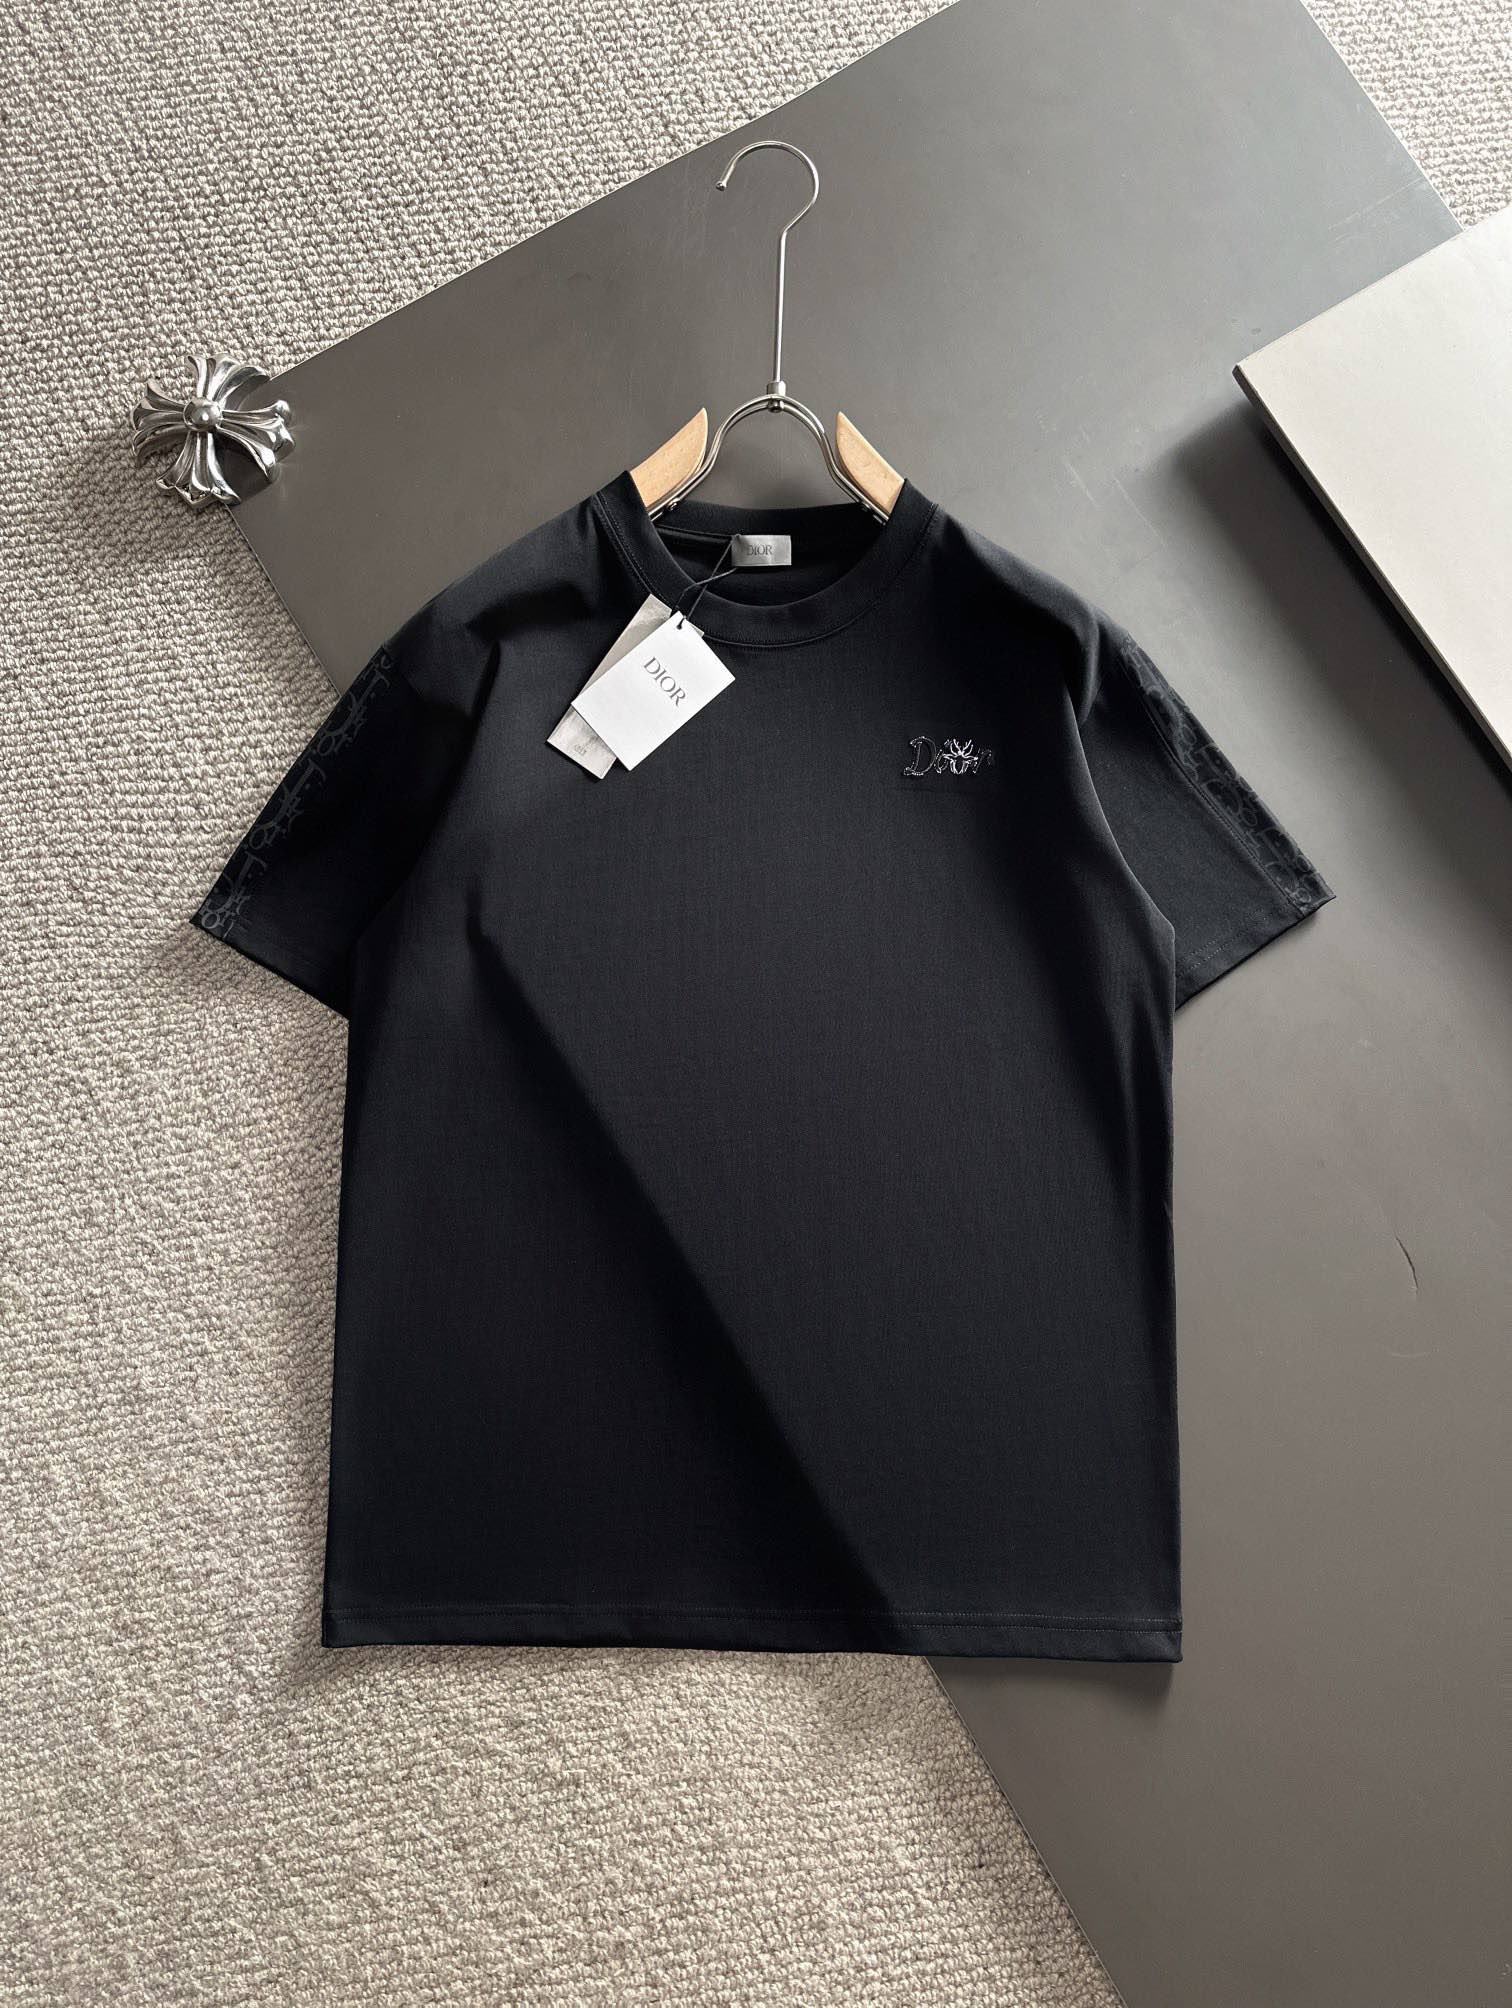 爆買い大得価 ディオール tシャツ激安通販 短袖 品質保証 トップス 純綿 シンプル 人気新品 柔らかい ブラック_1